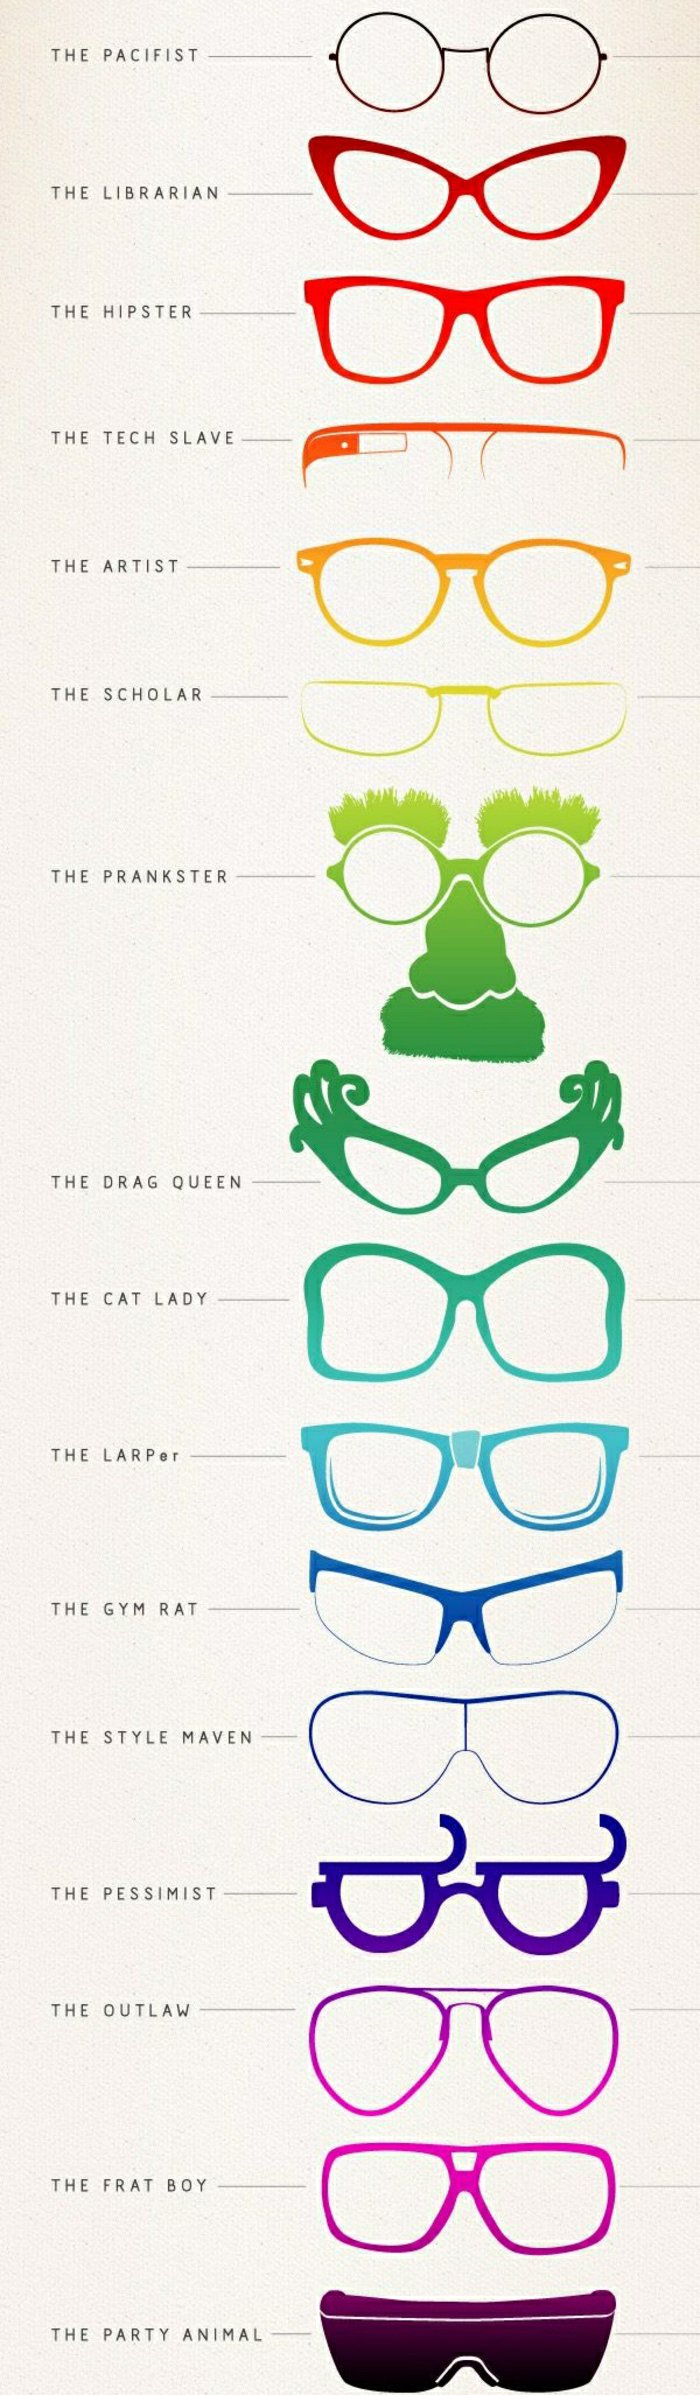 različiti oblici hipster naočale-ljudske vrste